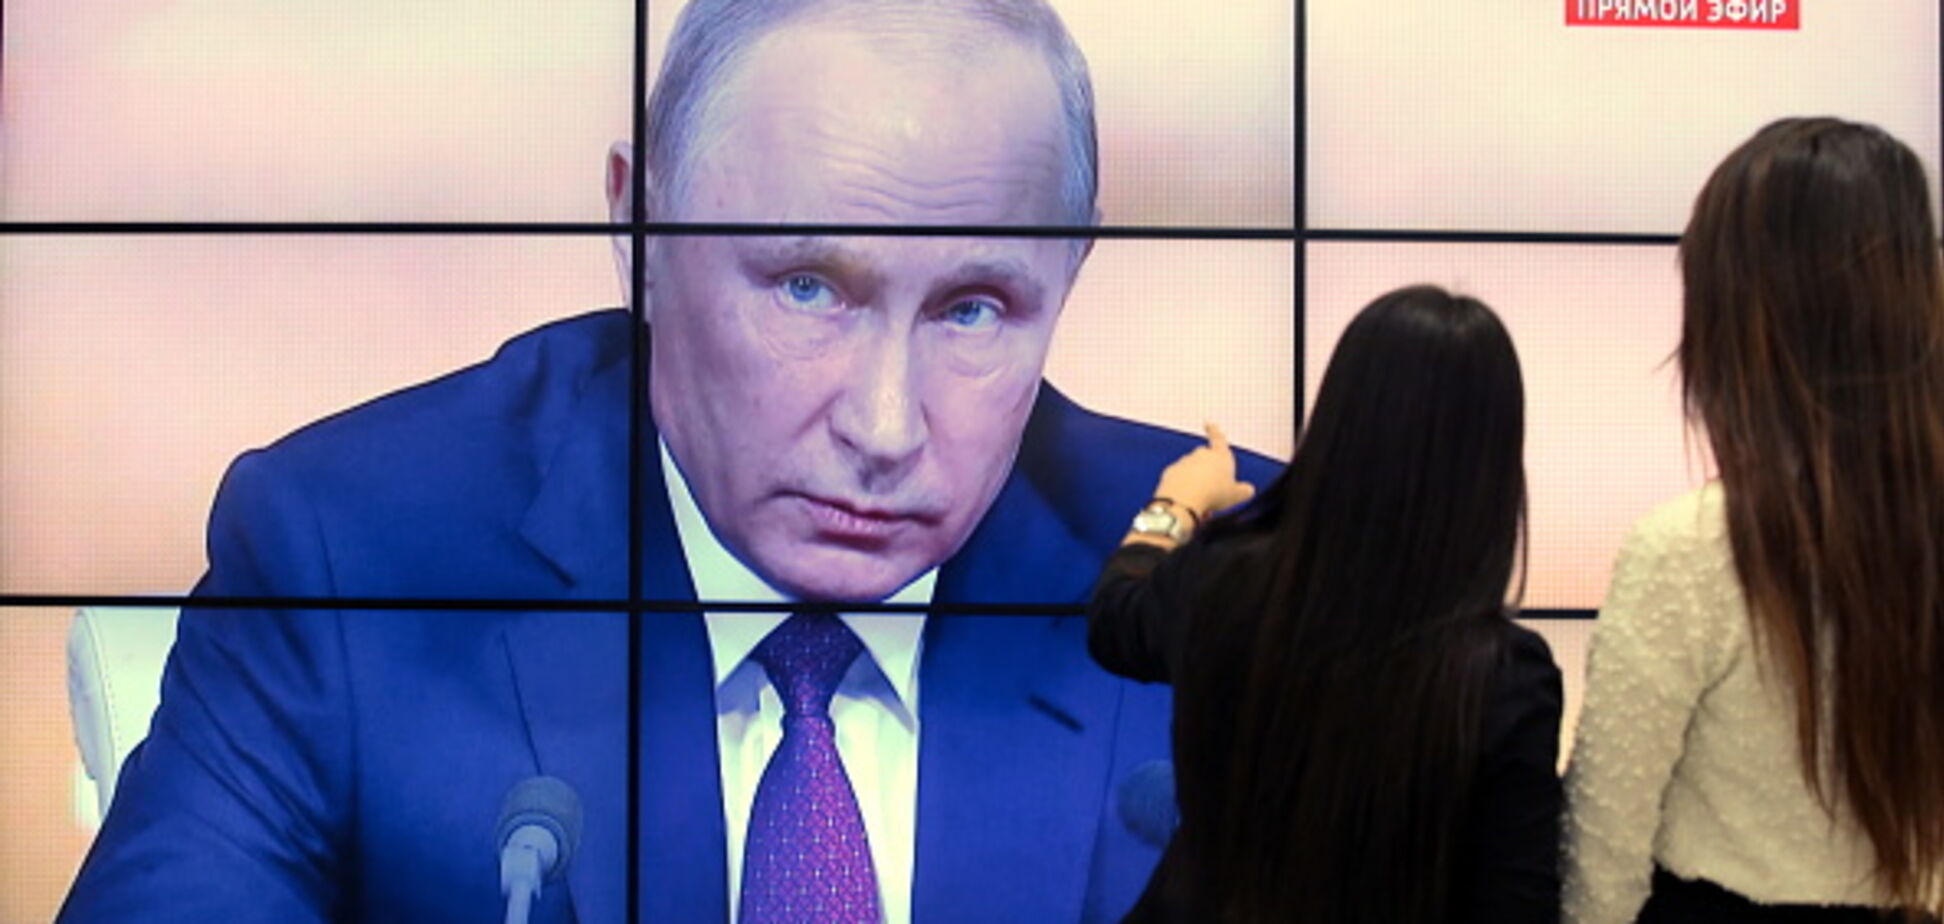 Що наговорив за 3,5 години: в мережі показали заяви Путіна 'однією картинкою'